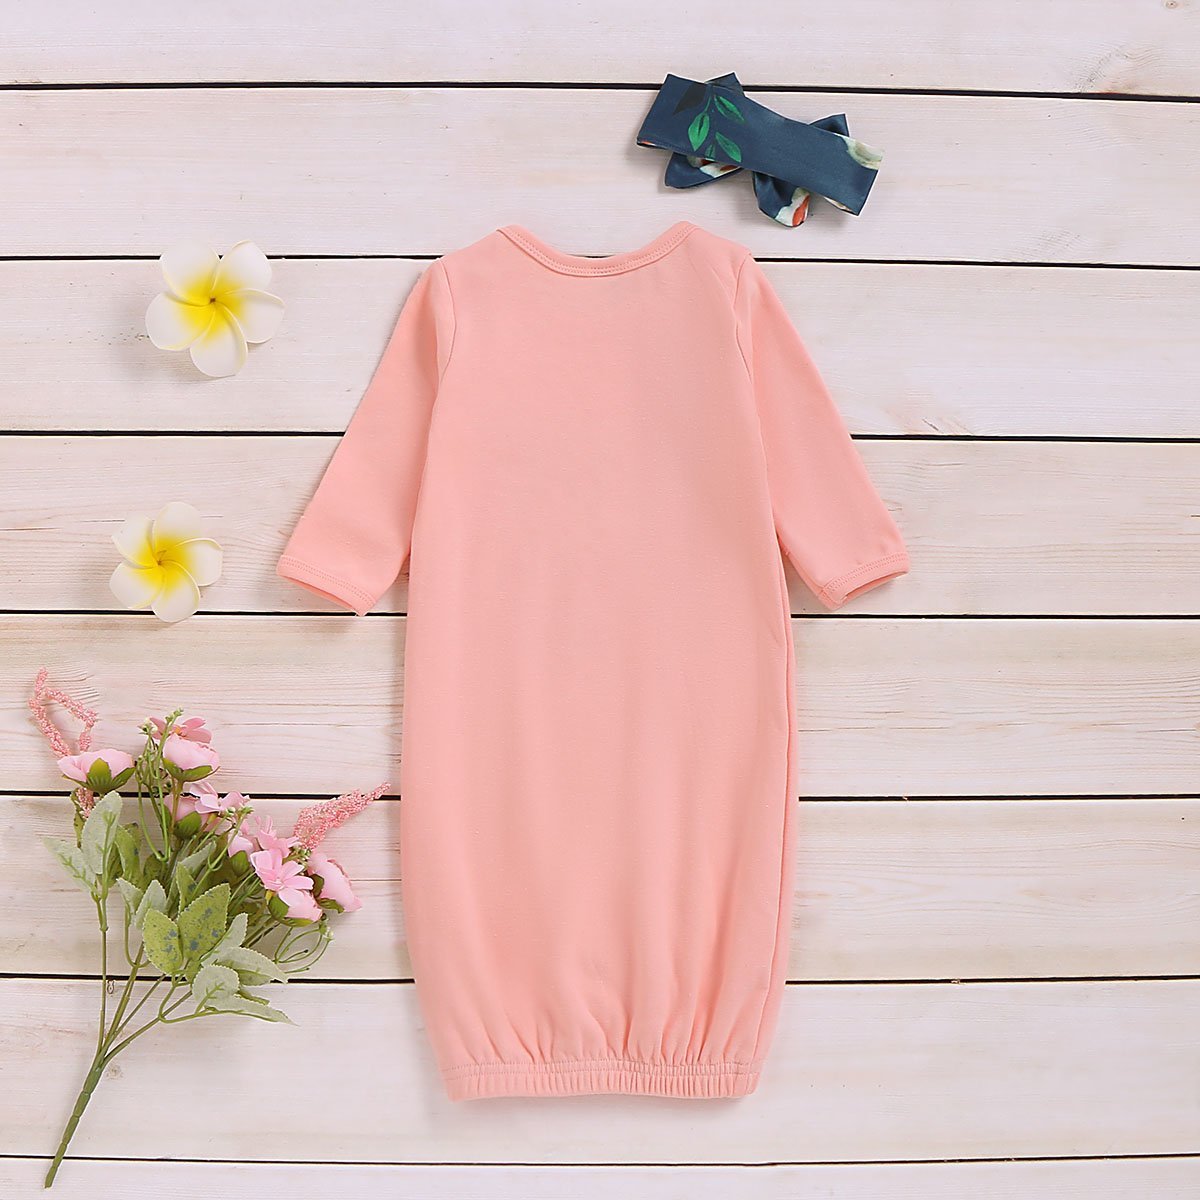 Pijama e tiara com estampa floral para bebê recém-nascido amor à primeira vista